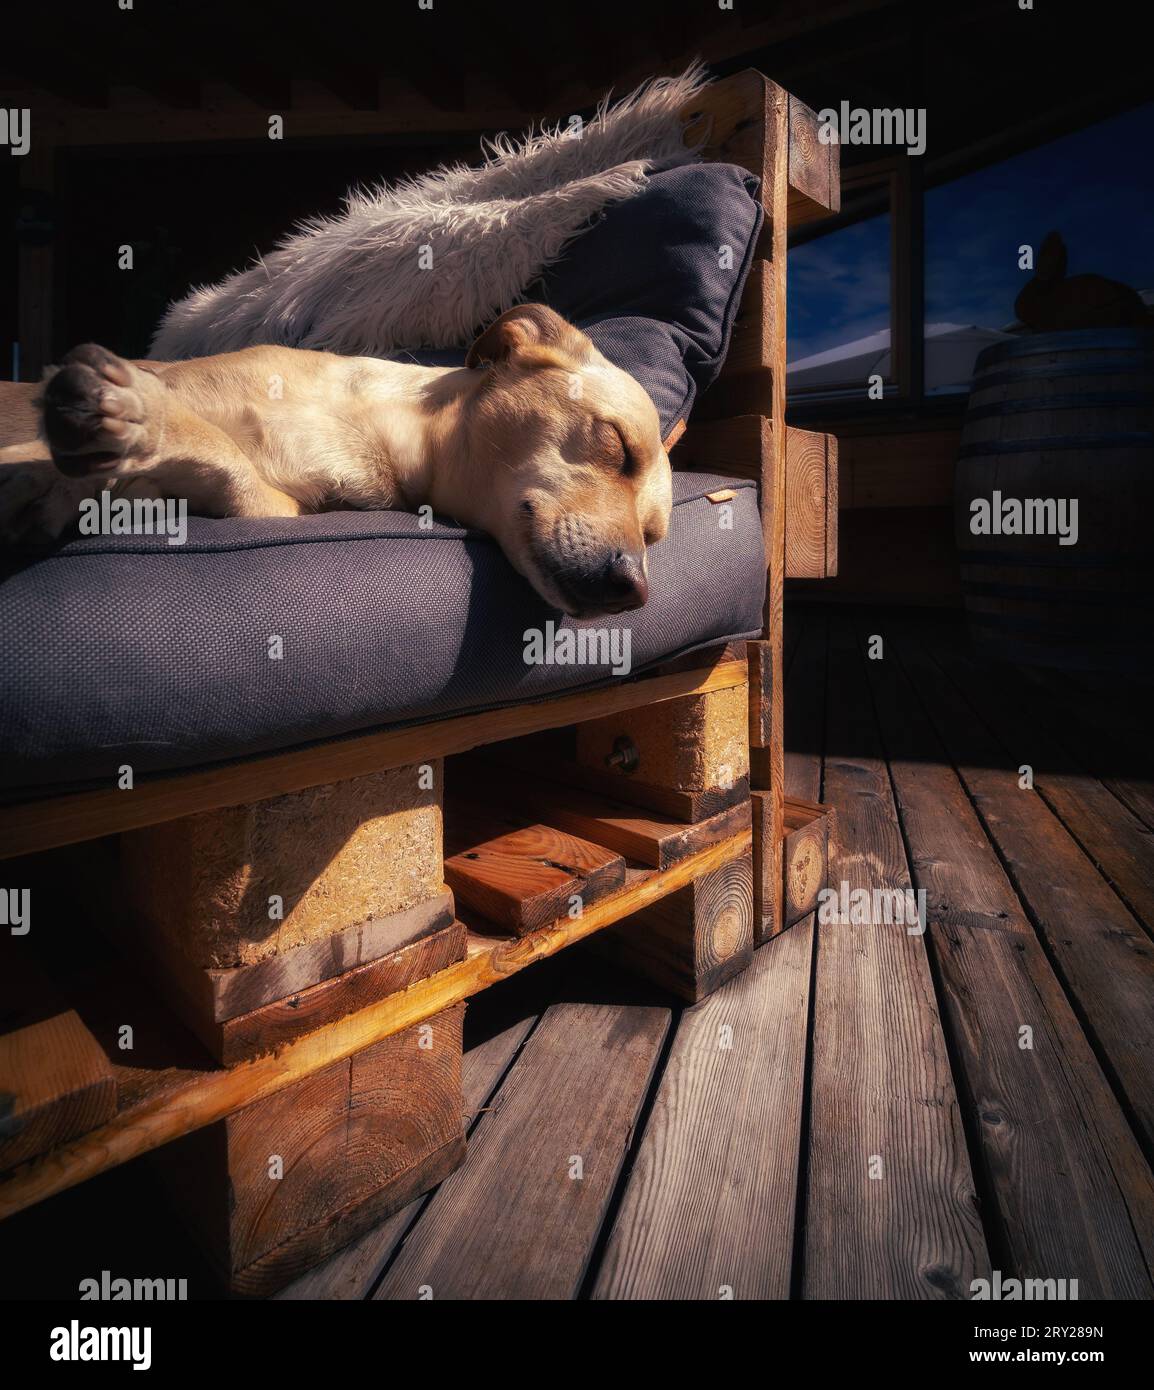 1x1 foto di un cane che dorme su un divano Foto Stock